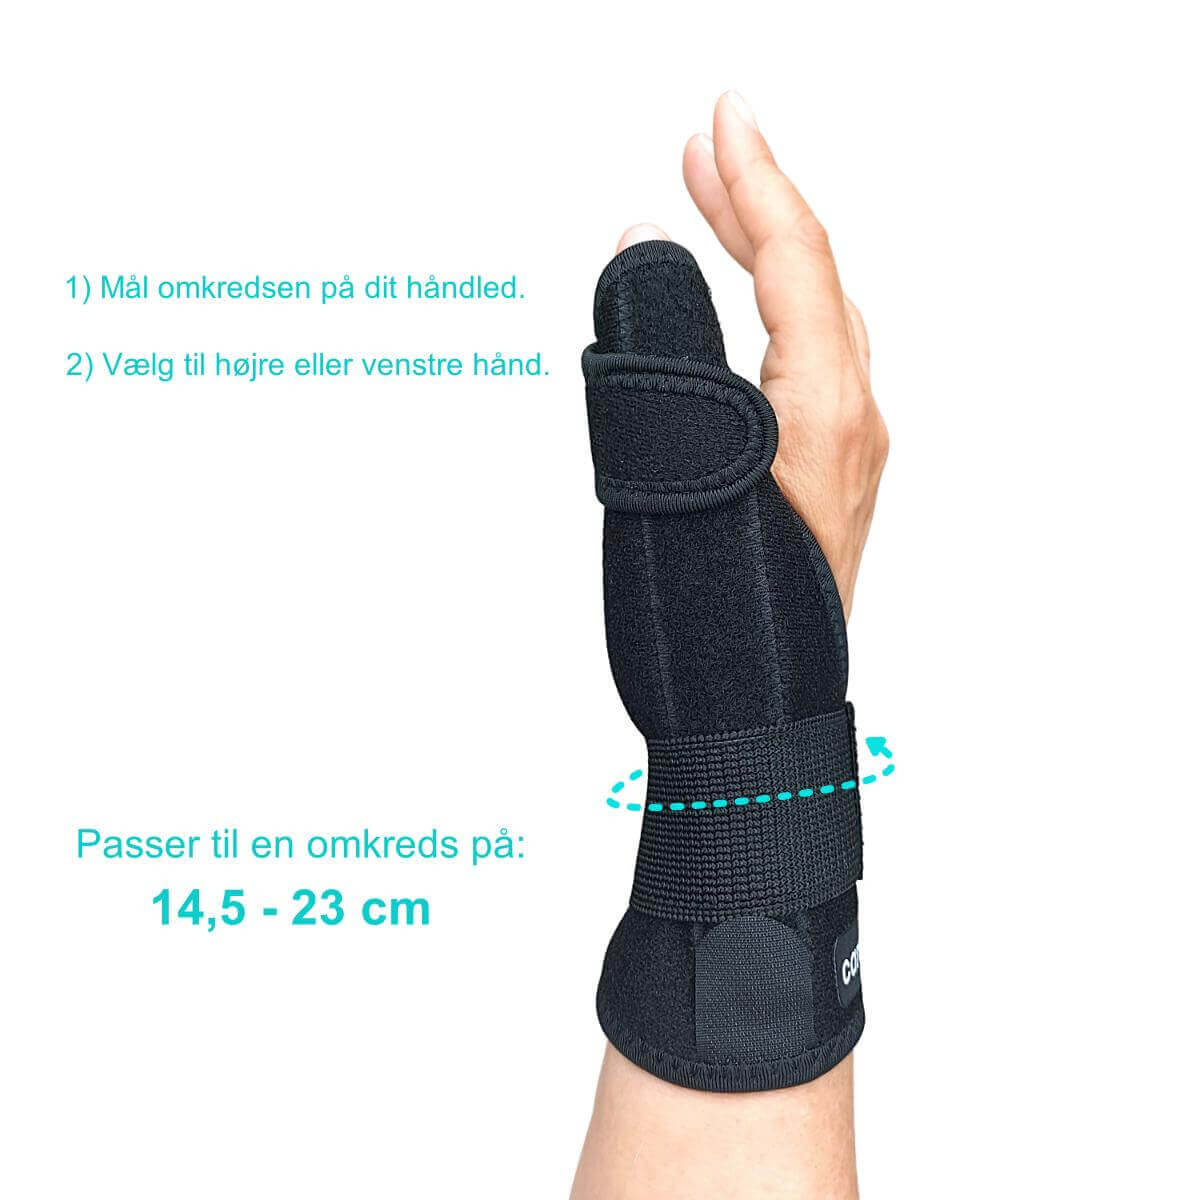 Køb tommelfinger skinne og håndledsstøtte med bedste støtte og lindring af smerter i tommel og håndled HL10, justérbar, one-size. Lav pris på kvalitets tommel bandage online. Se størrelses-guide.